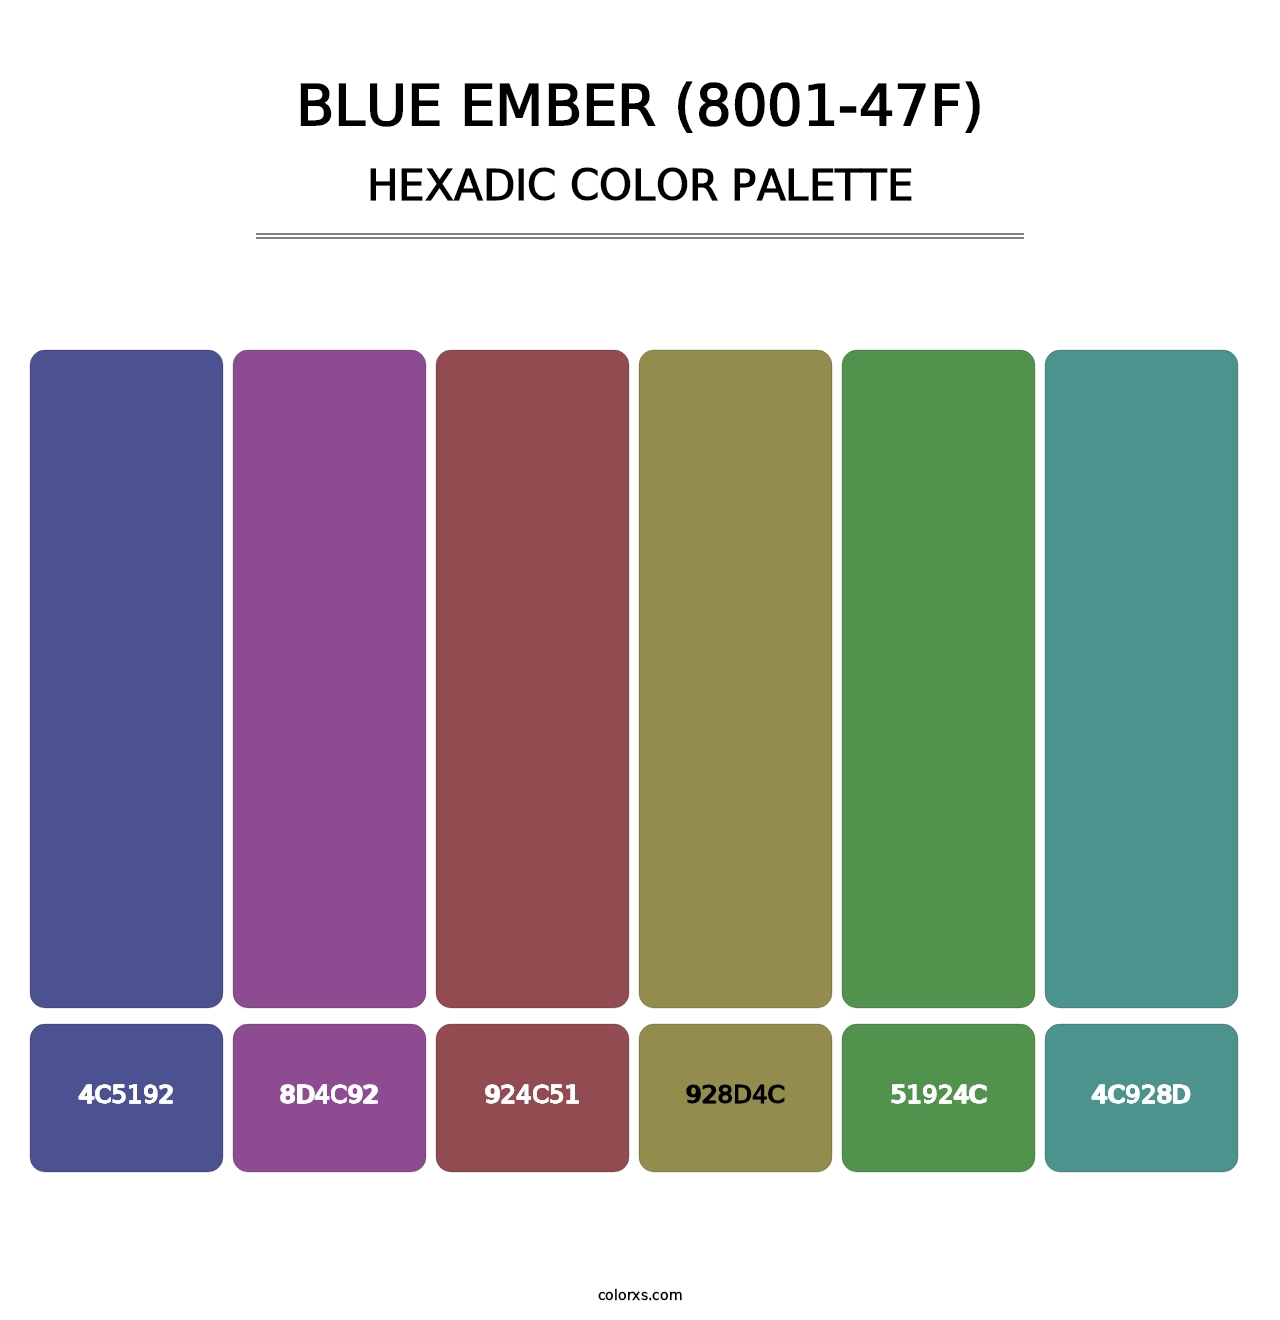 Blue Ember (8001-47F) - Hexadic Color Palette